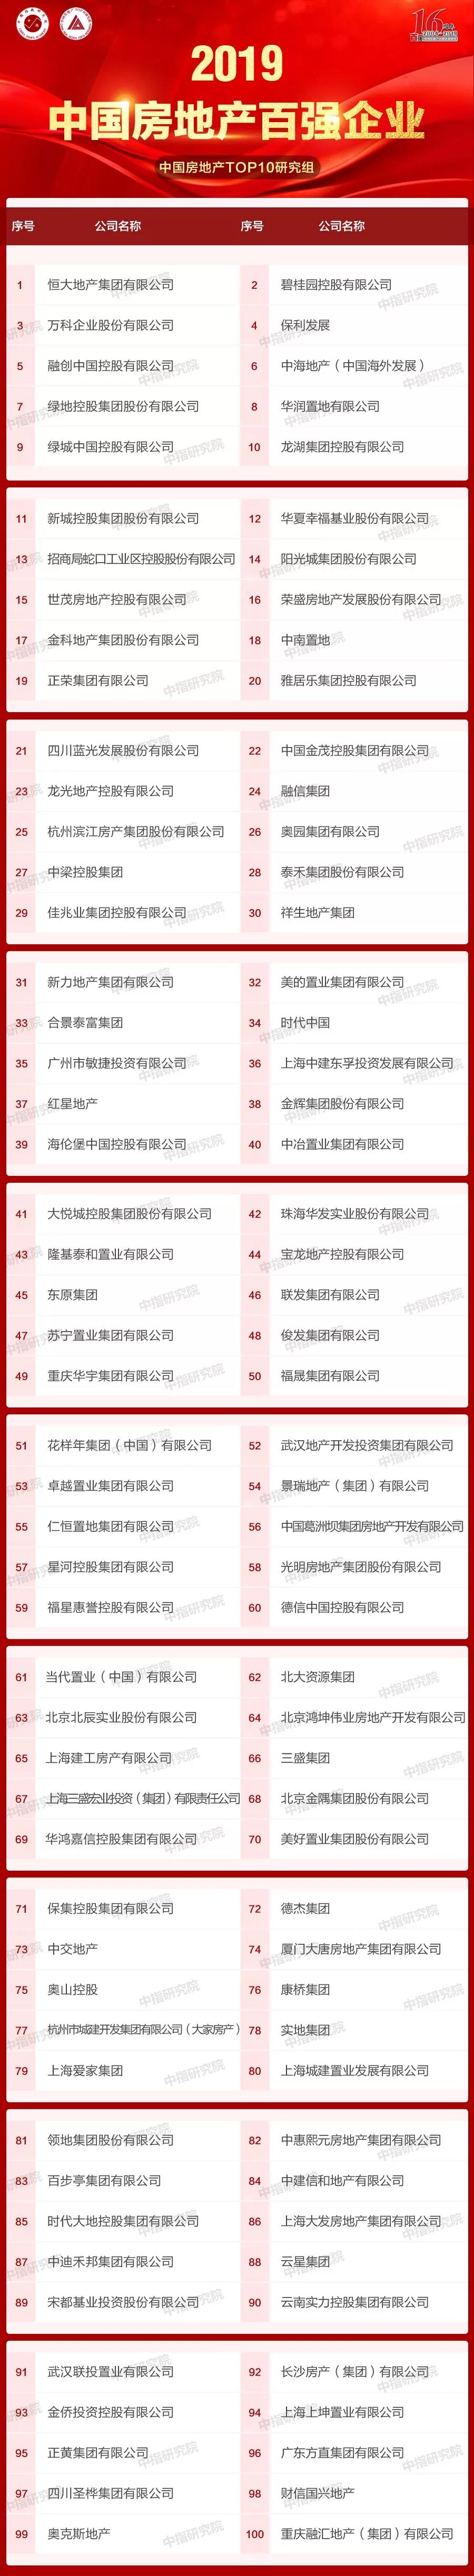 2019中国房企百强排行名单出炉